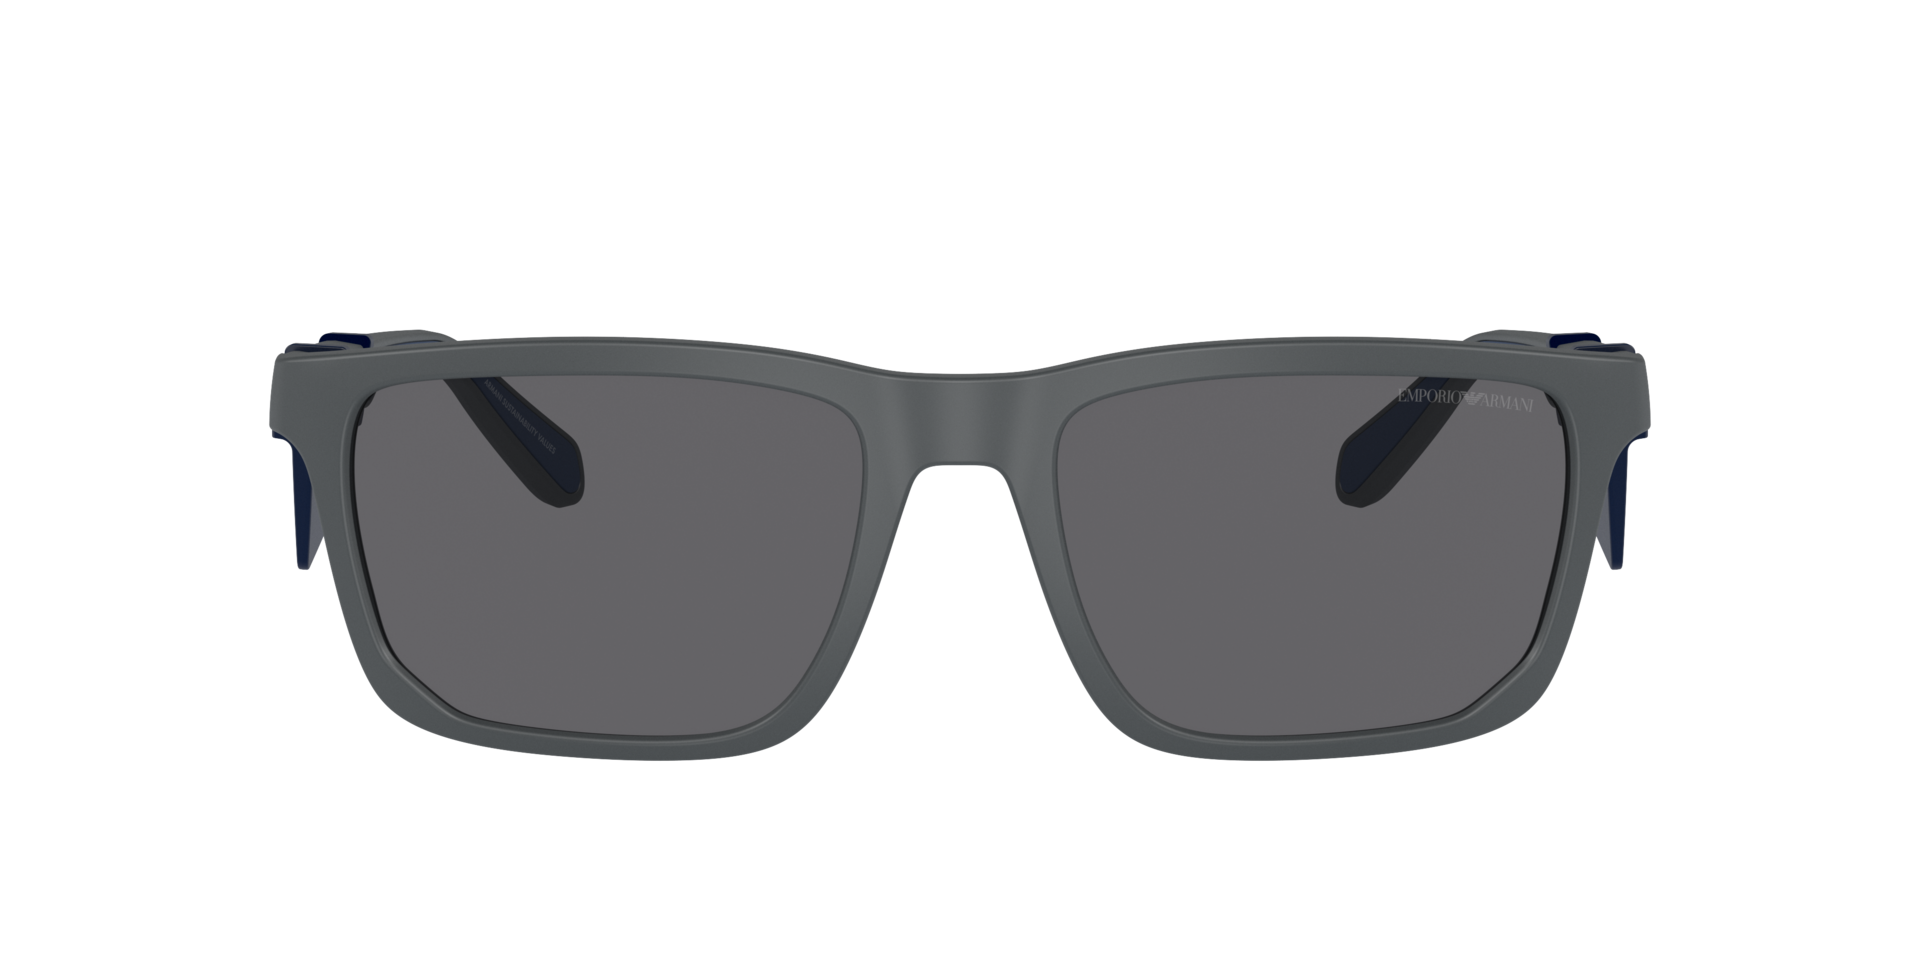 Das Bild zeigt die Sonnenbrille EA4219 610387 von der Marke Emporio Armani in Matt dunkelgrau.